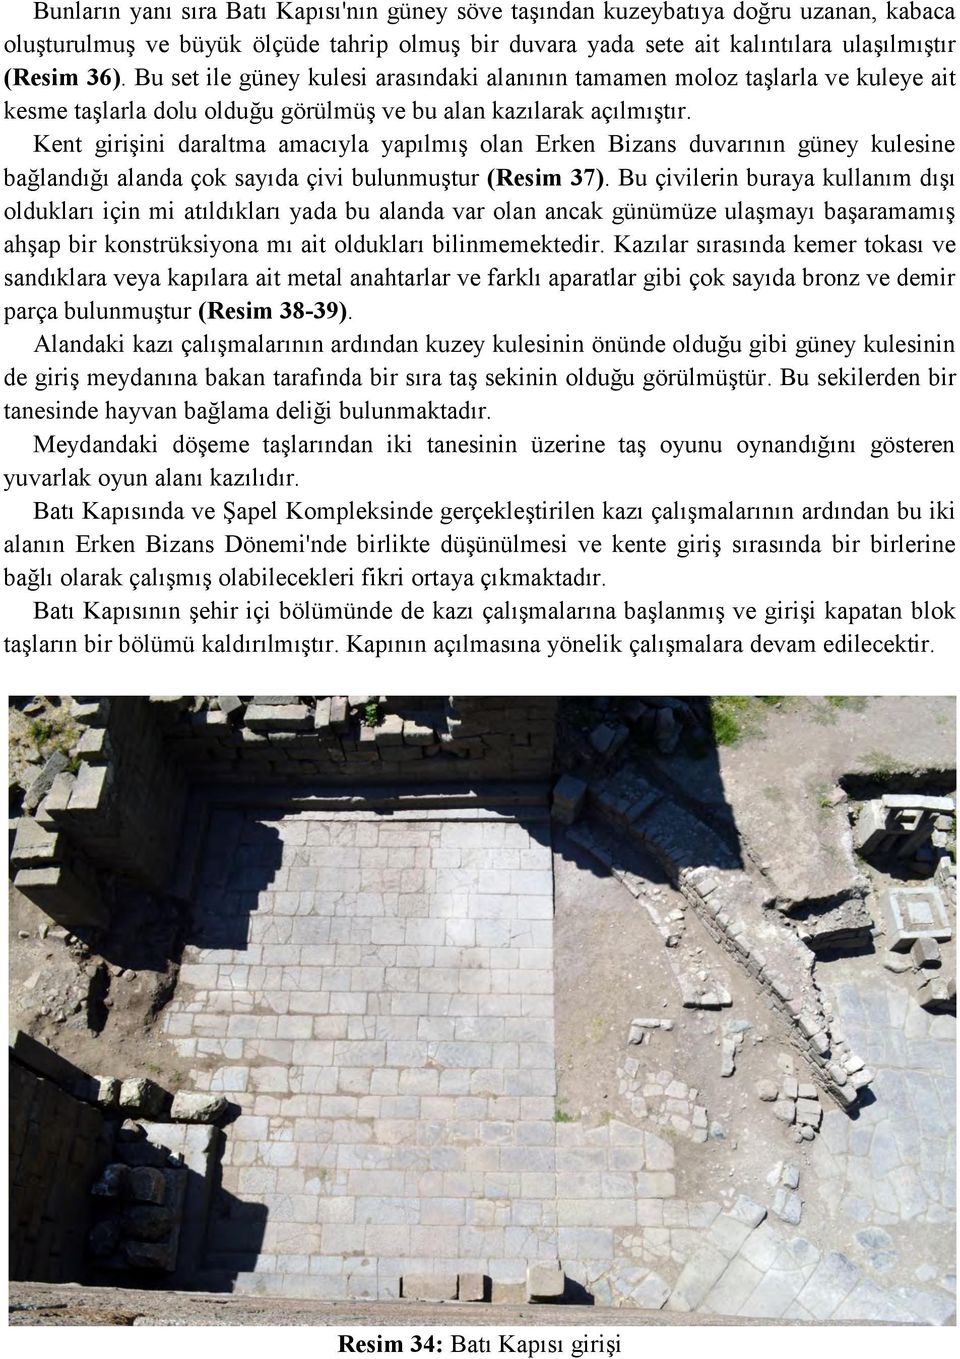 Kent girişini daraltma amacıyla yapılmış olan Erken Bizans duvarının güney kulesine bağlandığı alanda çok sayıda çivi bulunmuştur (Resim 37).